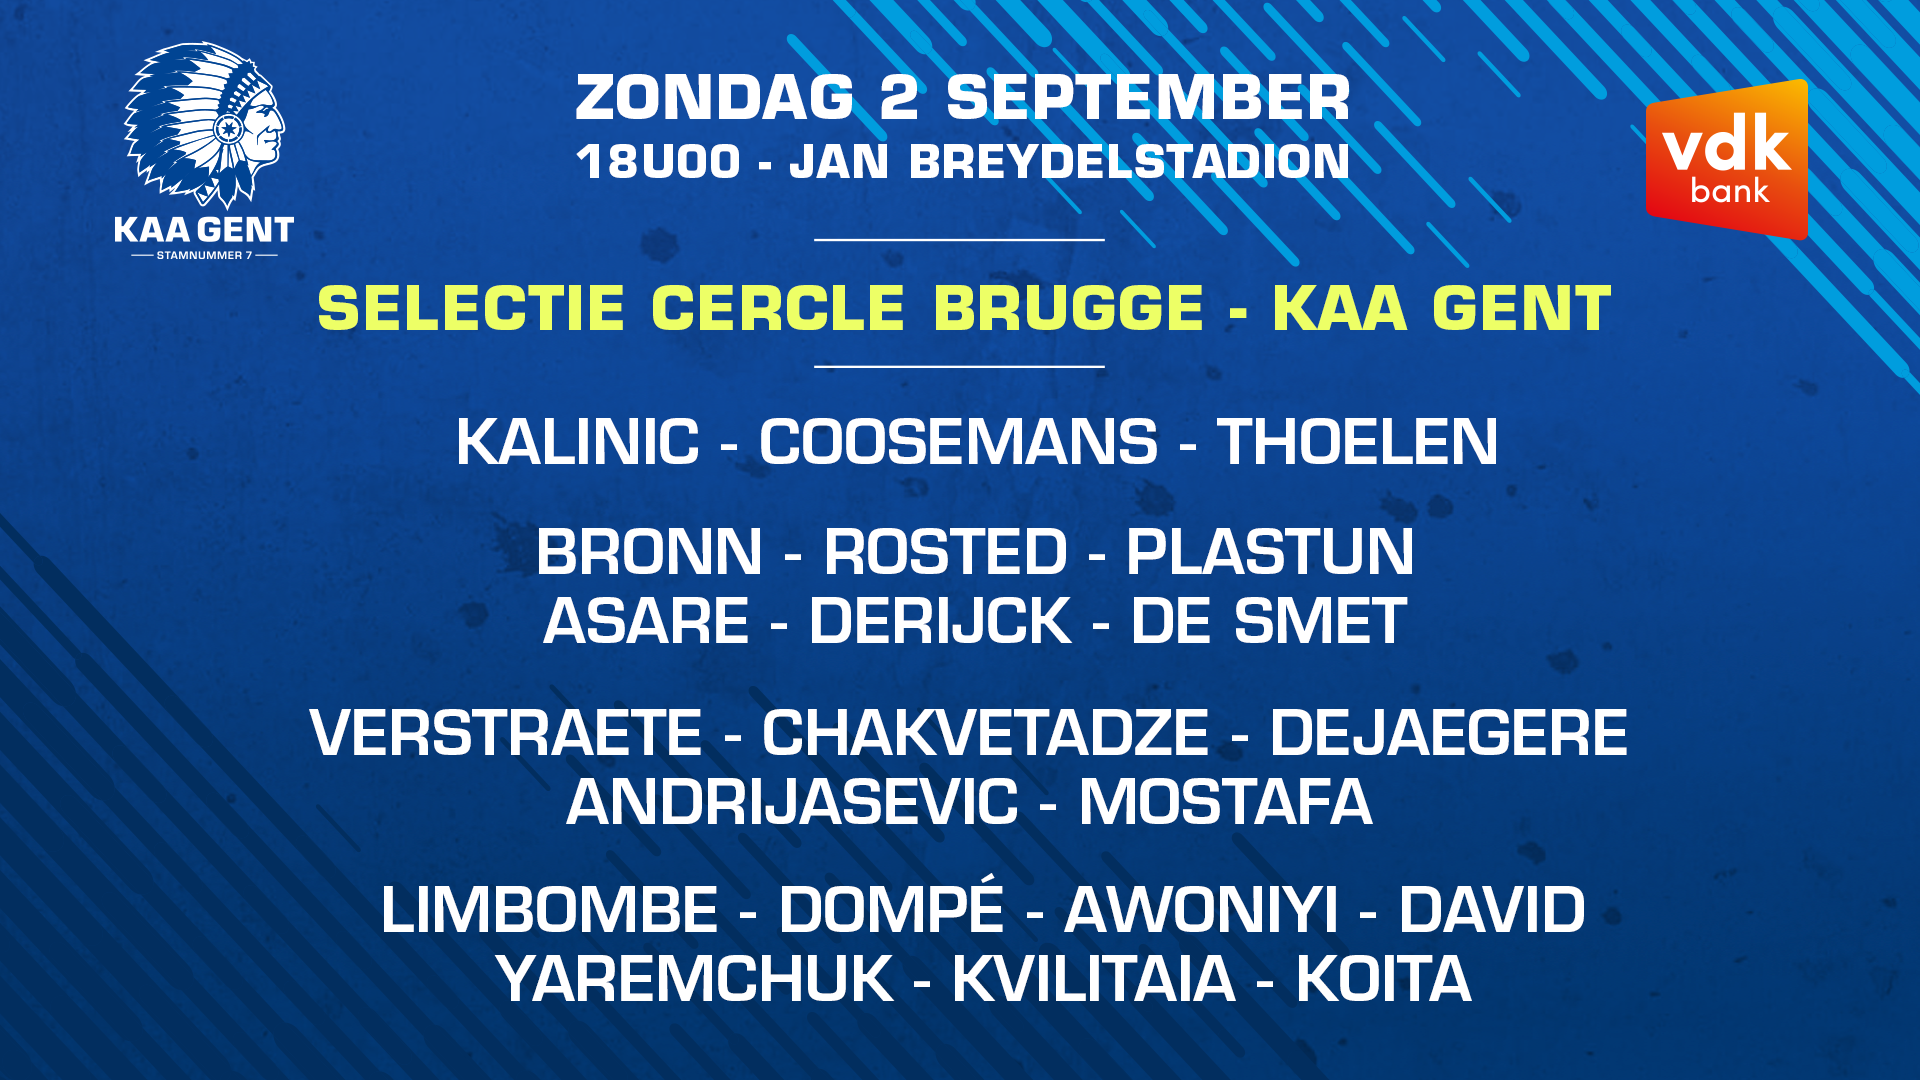 Selectie voor Cercle Brugge - KAA Gent